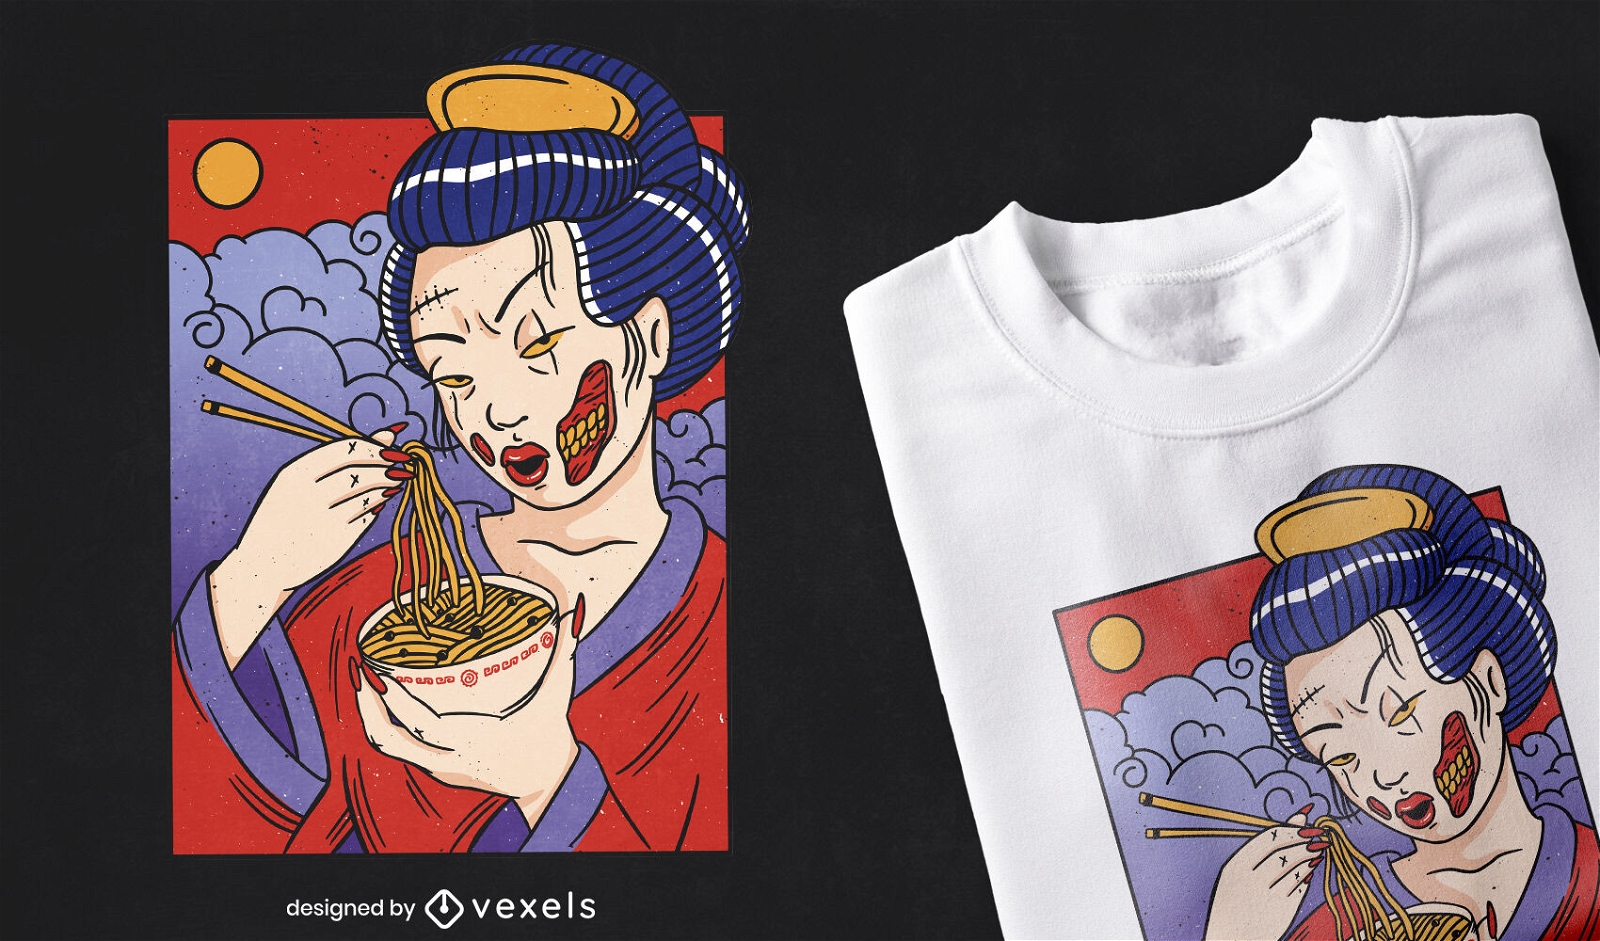 Genial dise?o de camiseta zombie geisha